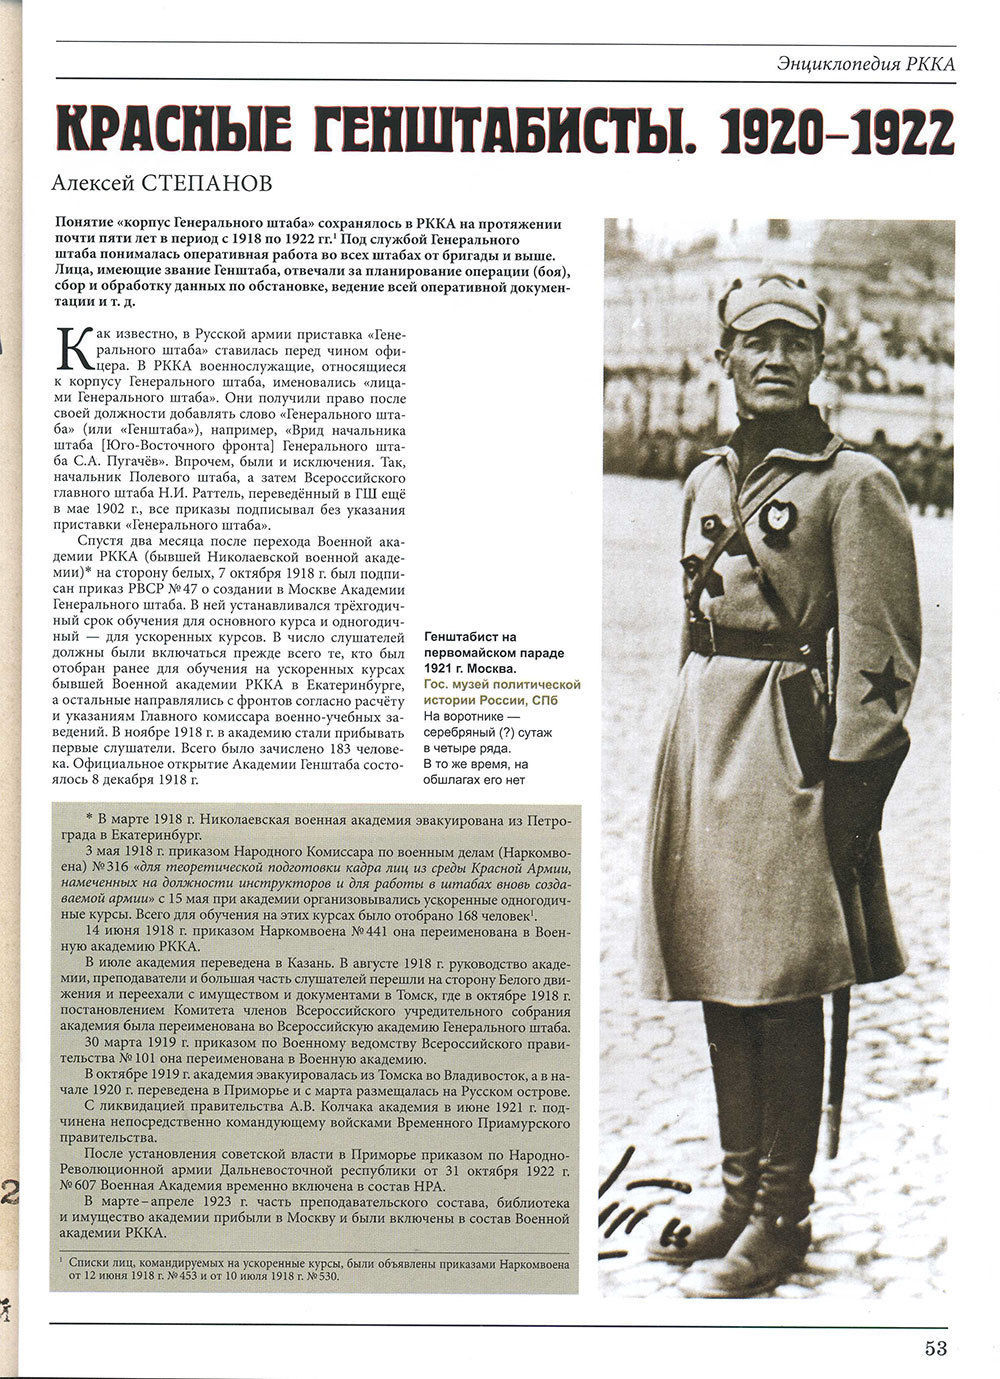 RVZ-139 Старый Цейхгауз. Российский военно-исторический журнал № 38 (№ 6/2010)